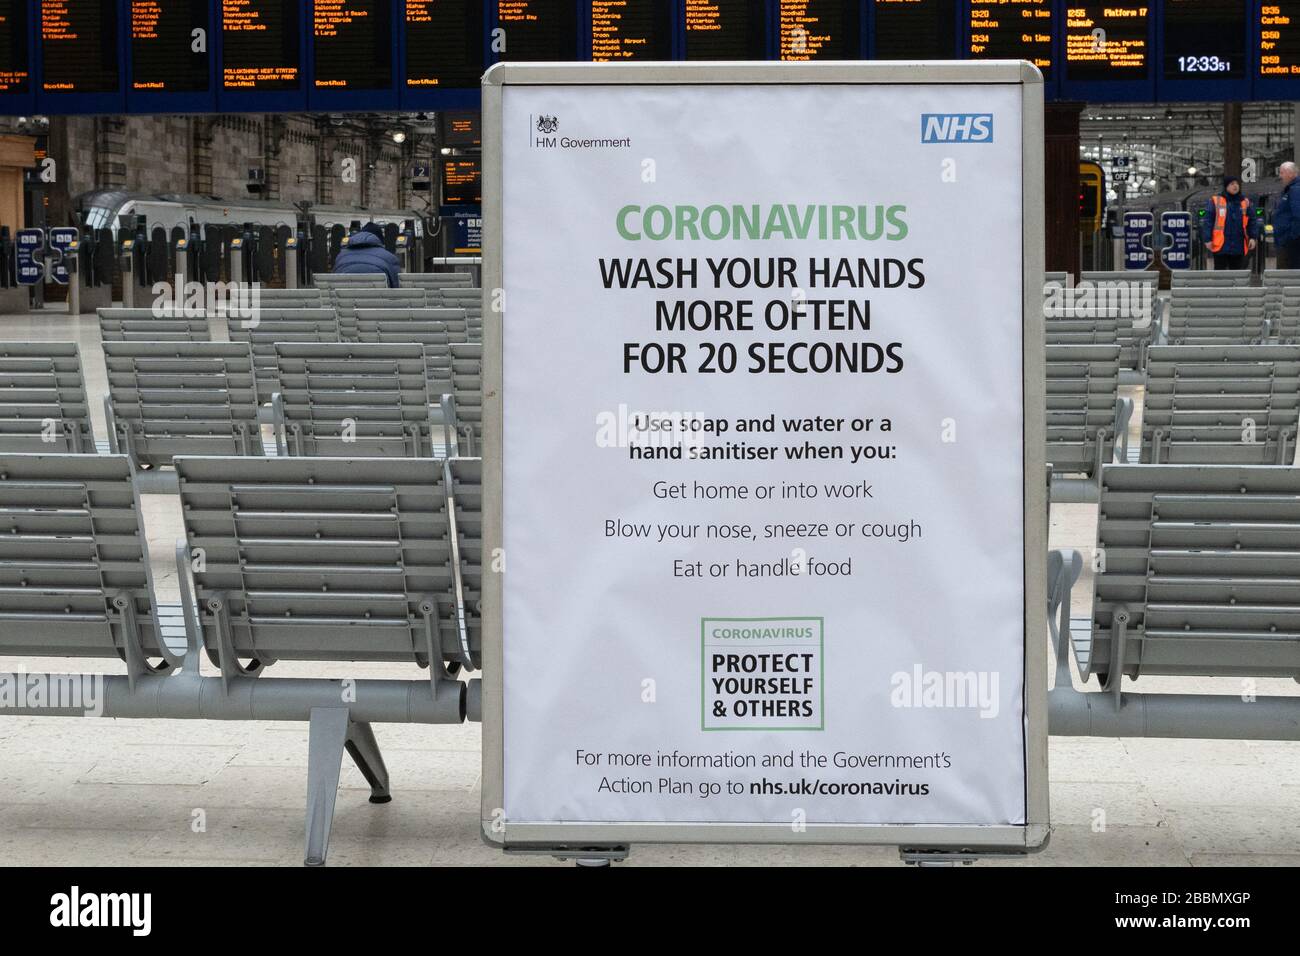 Coronavirus Reino Unido - lávese las manos más a menudo durante 20 segundos firme en una estación central de Glasgow muy tranquila, Glasgow, Escocia, Reino Unido Foto de stock